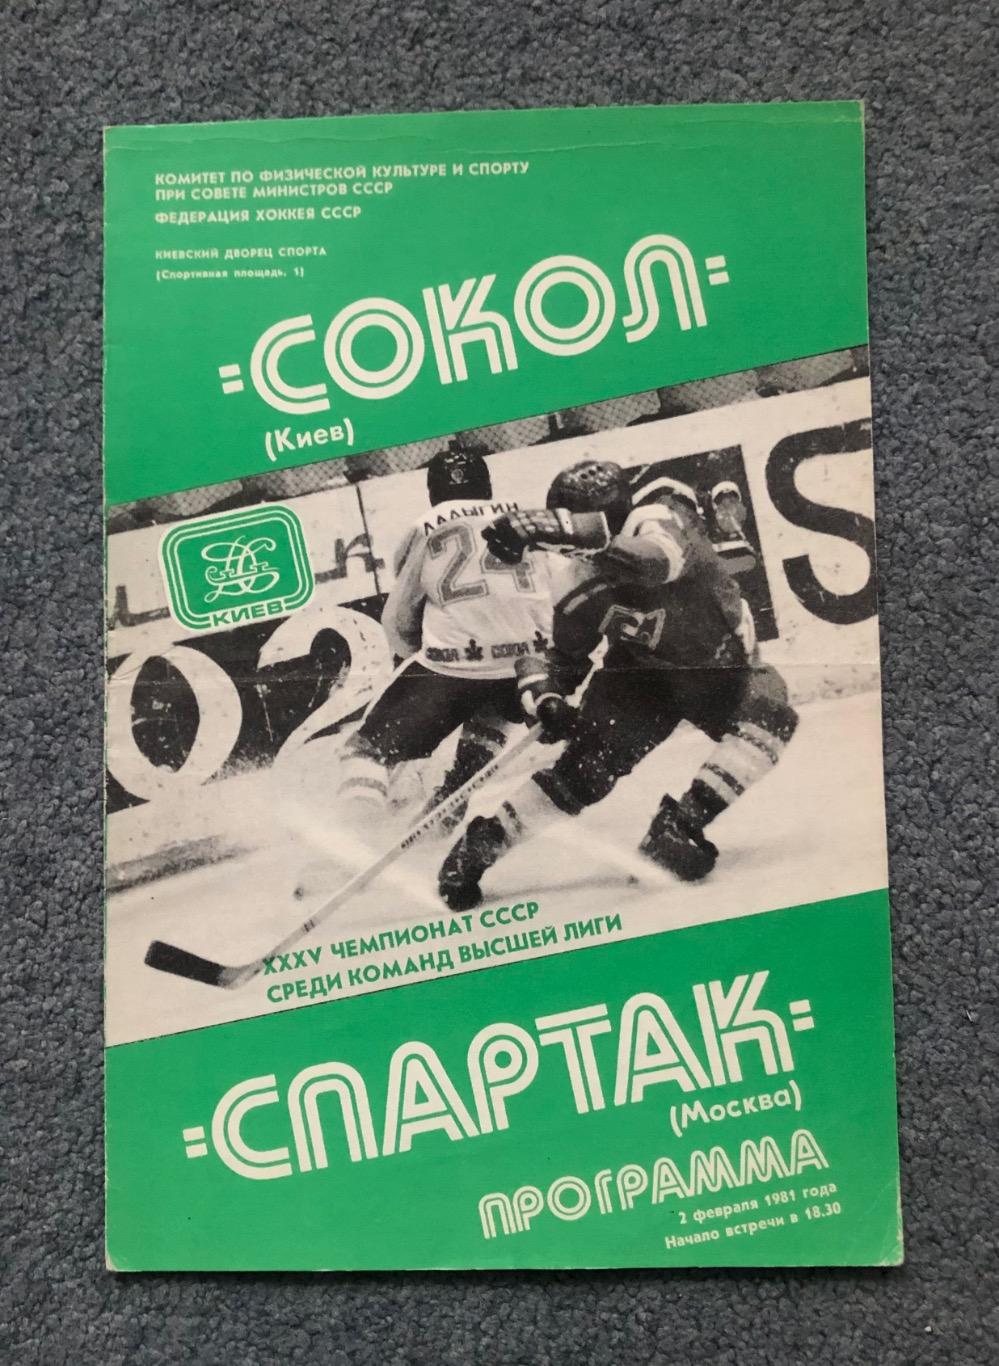 Сокол Киев - Спартак Москва, 02.02.1981